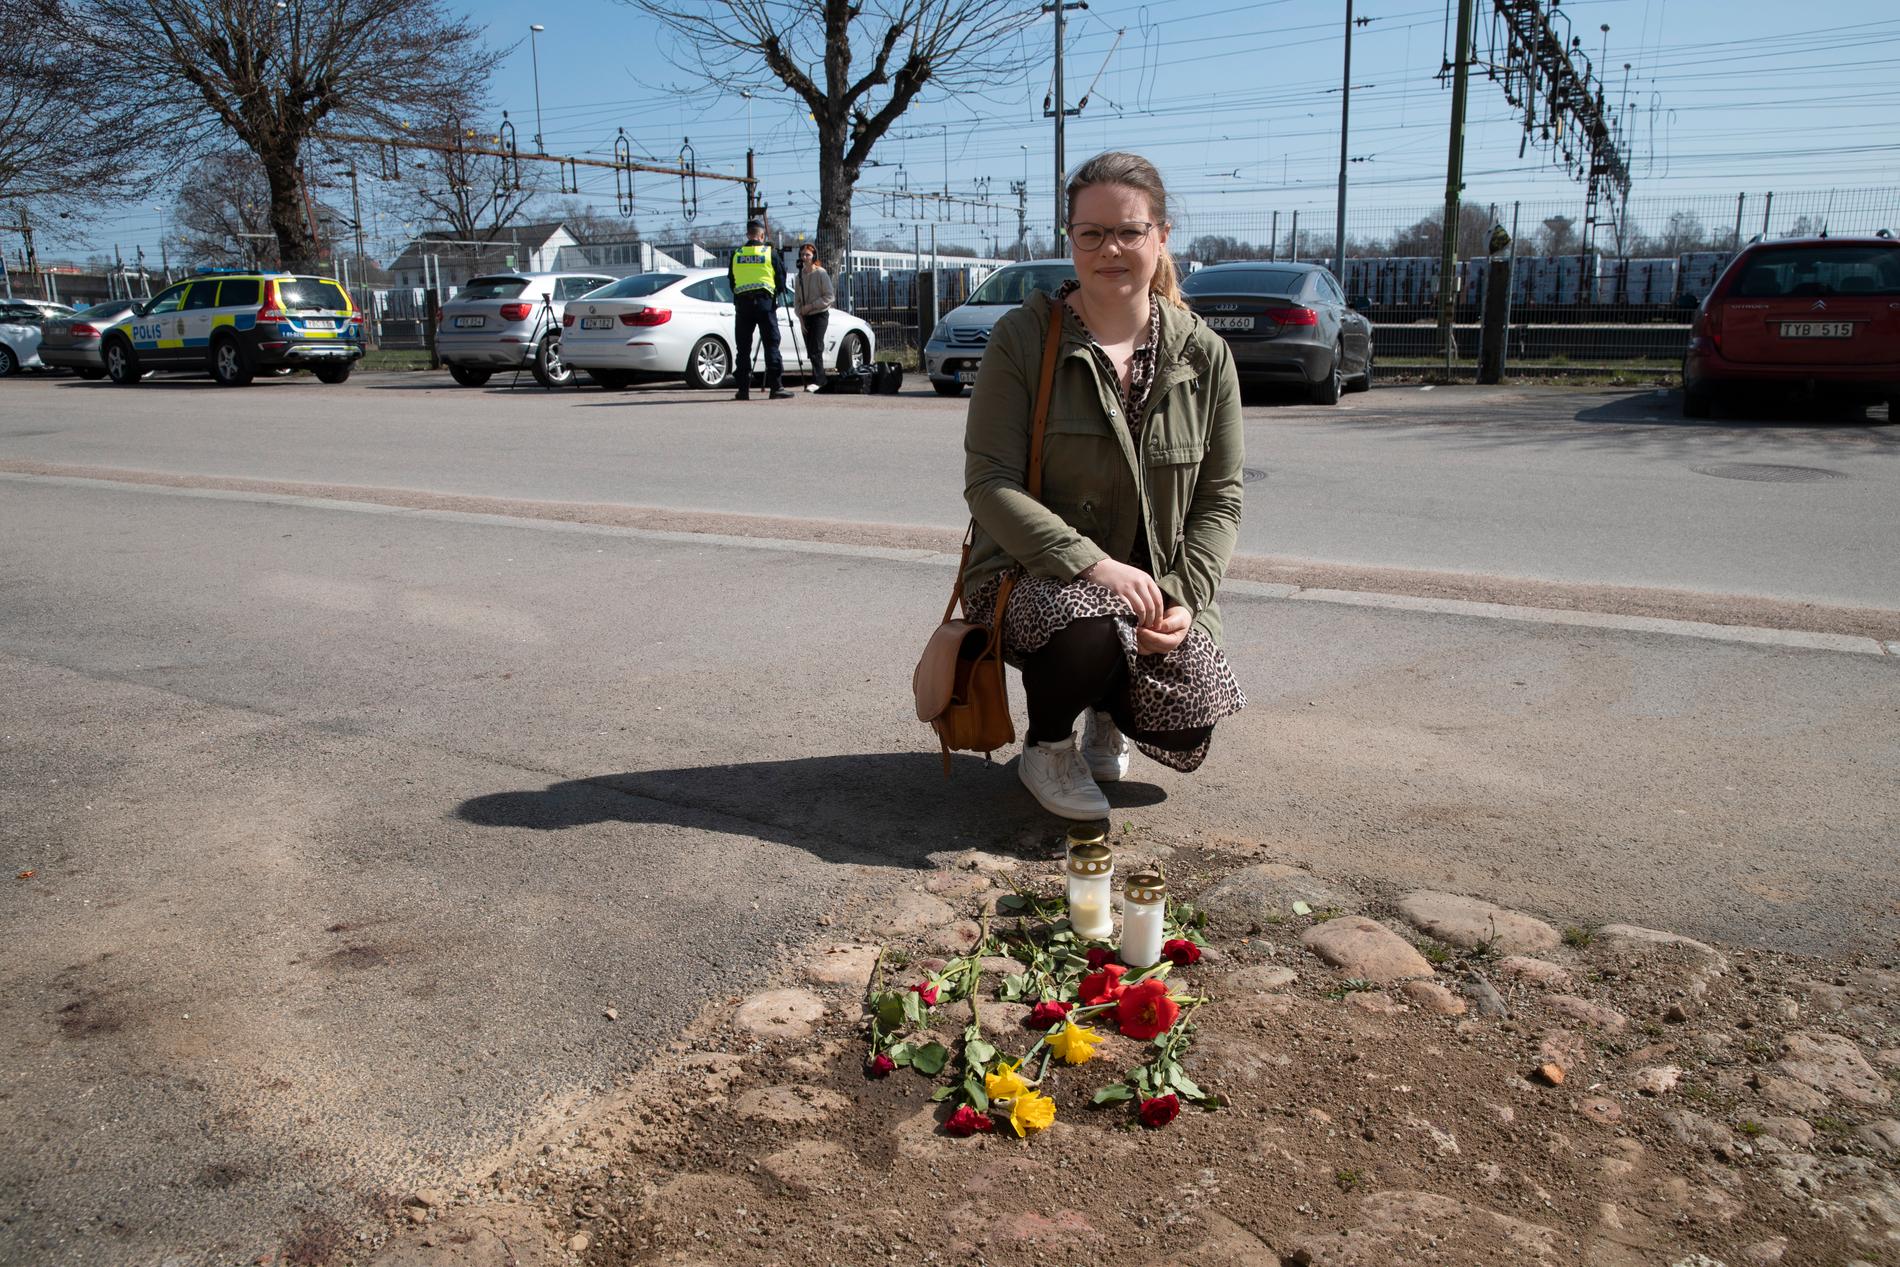 Boende i Alvesta besökte mordplatsen under söndagen. 31-åriga Malin Wetterhall och hennes mamma hade med sig ett ljus som de tände. 